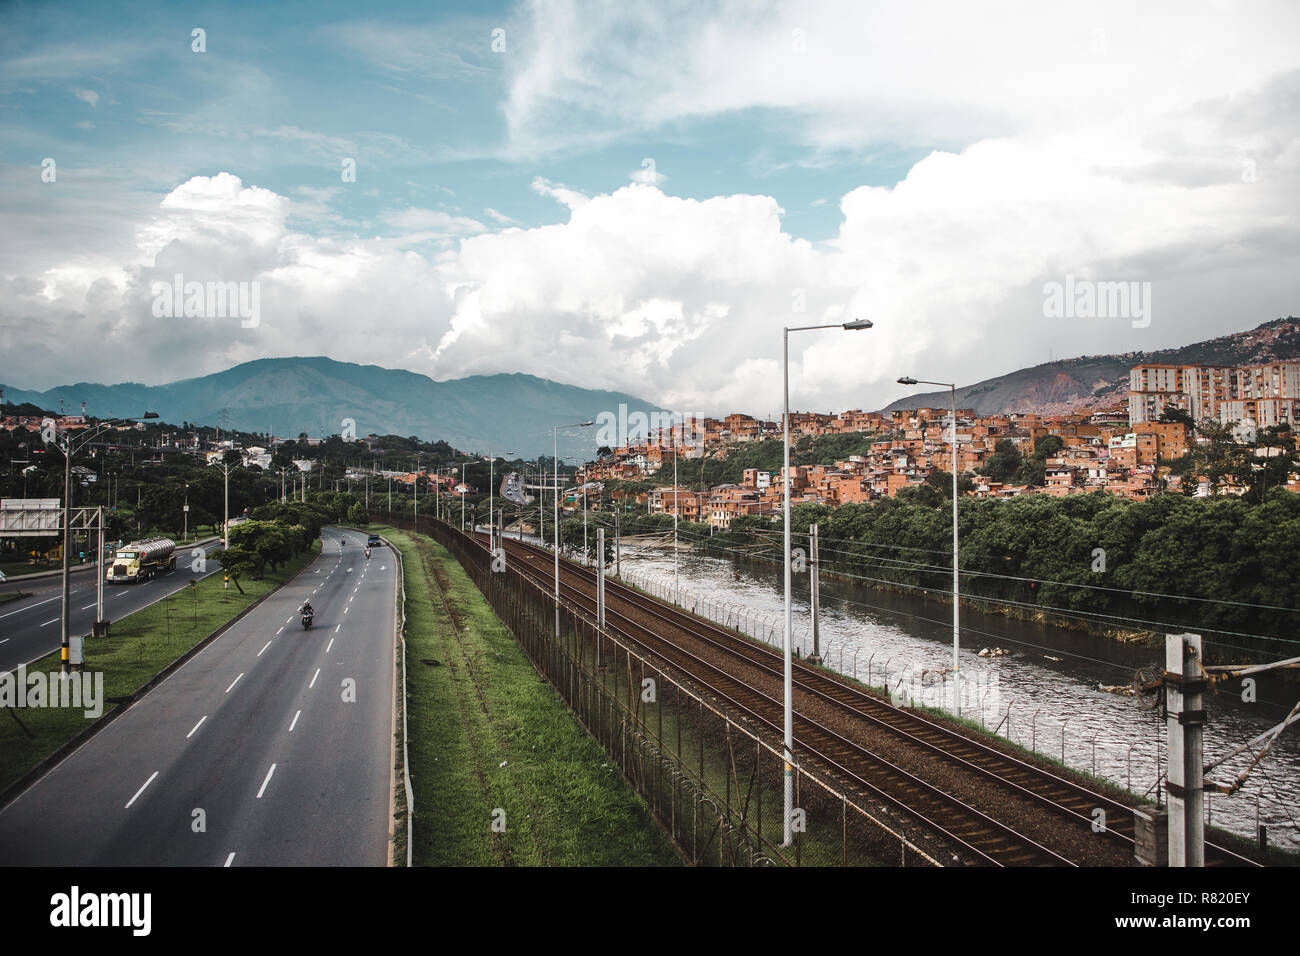 L'Autoroute, Rivière et chemin de fer dans la luxuriante ville vallonnée de Medellín, Colombie, avec la red maisons de barrios construit dans les collines Banque D'Images